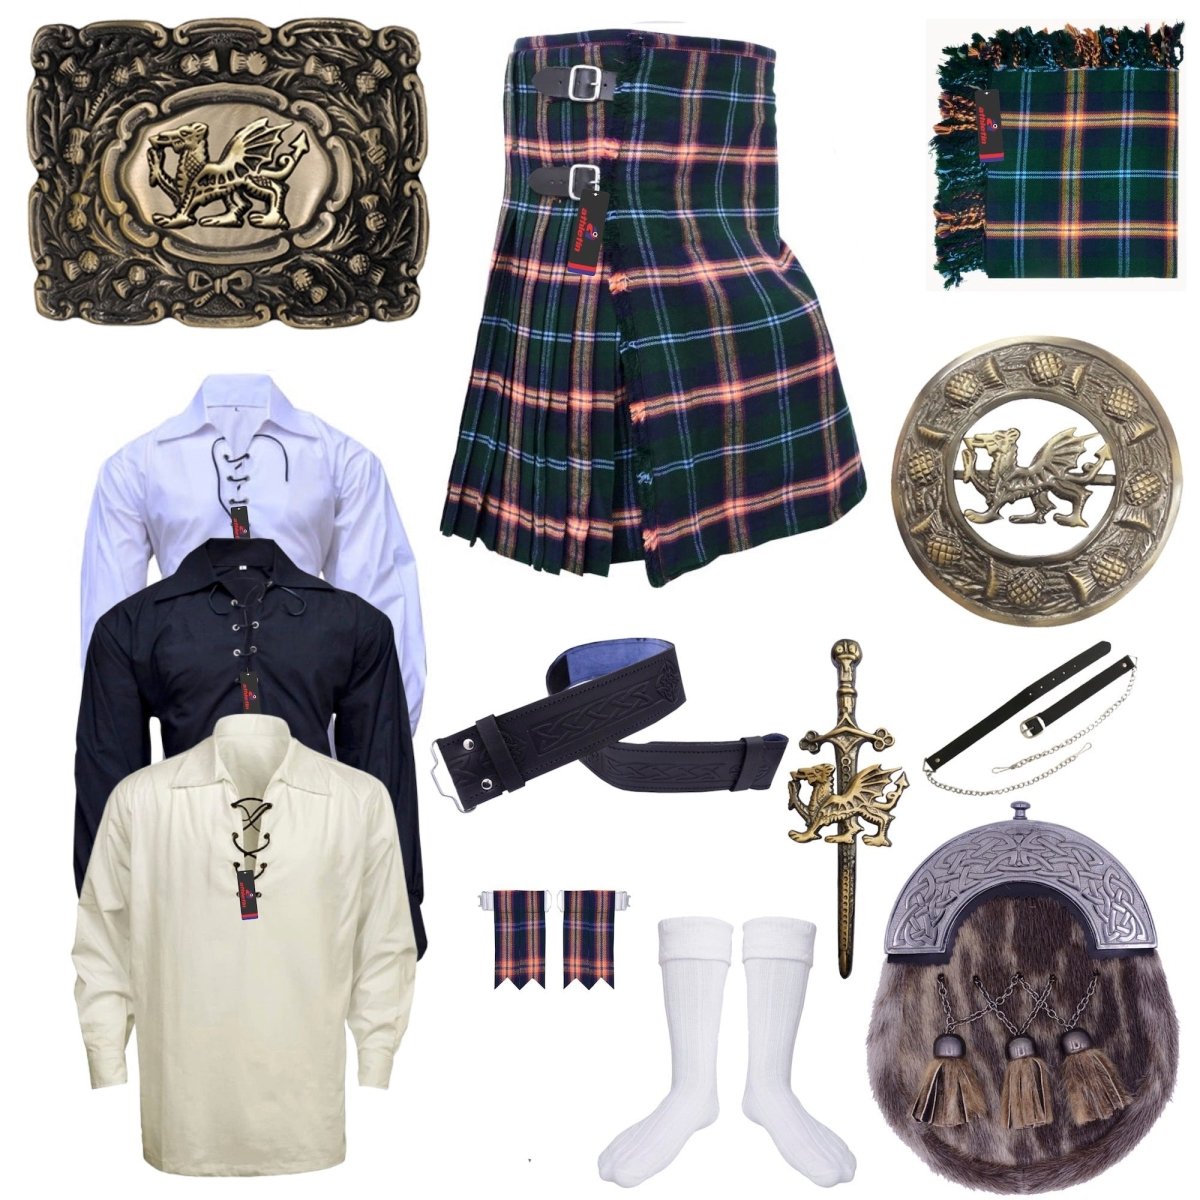 Clan Young Tartan Kilt Outfit